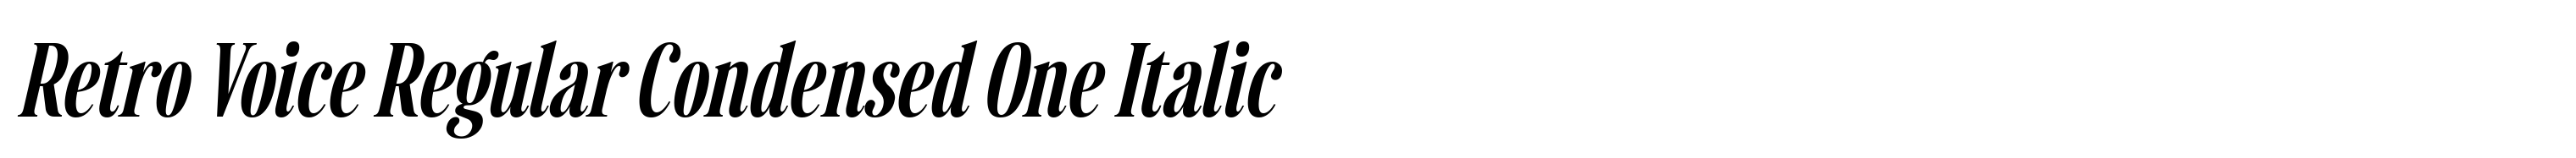 Retro Voice Regular Condensed One Italic